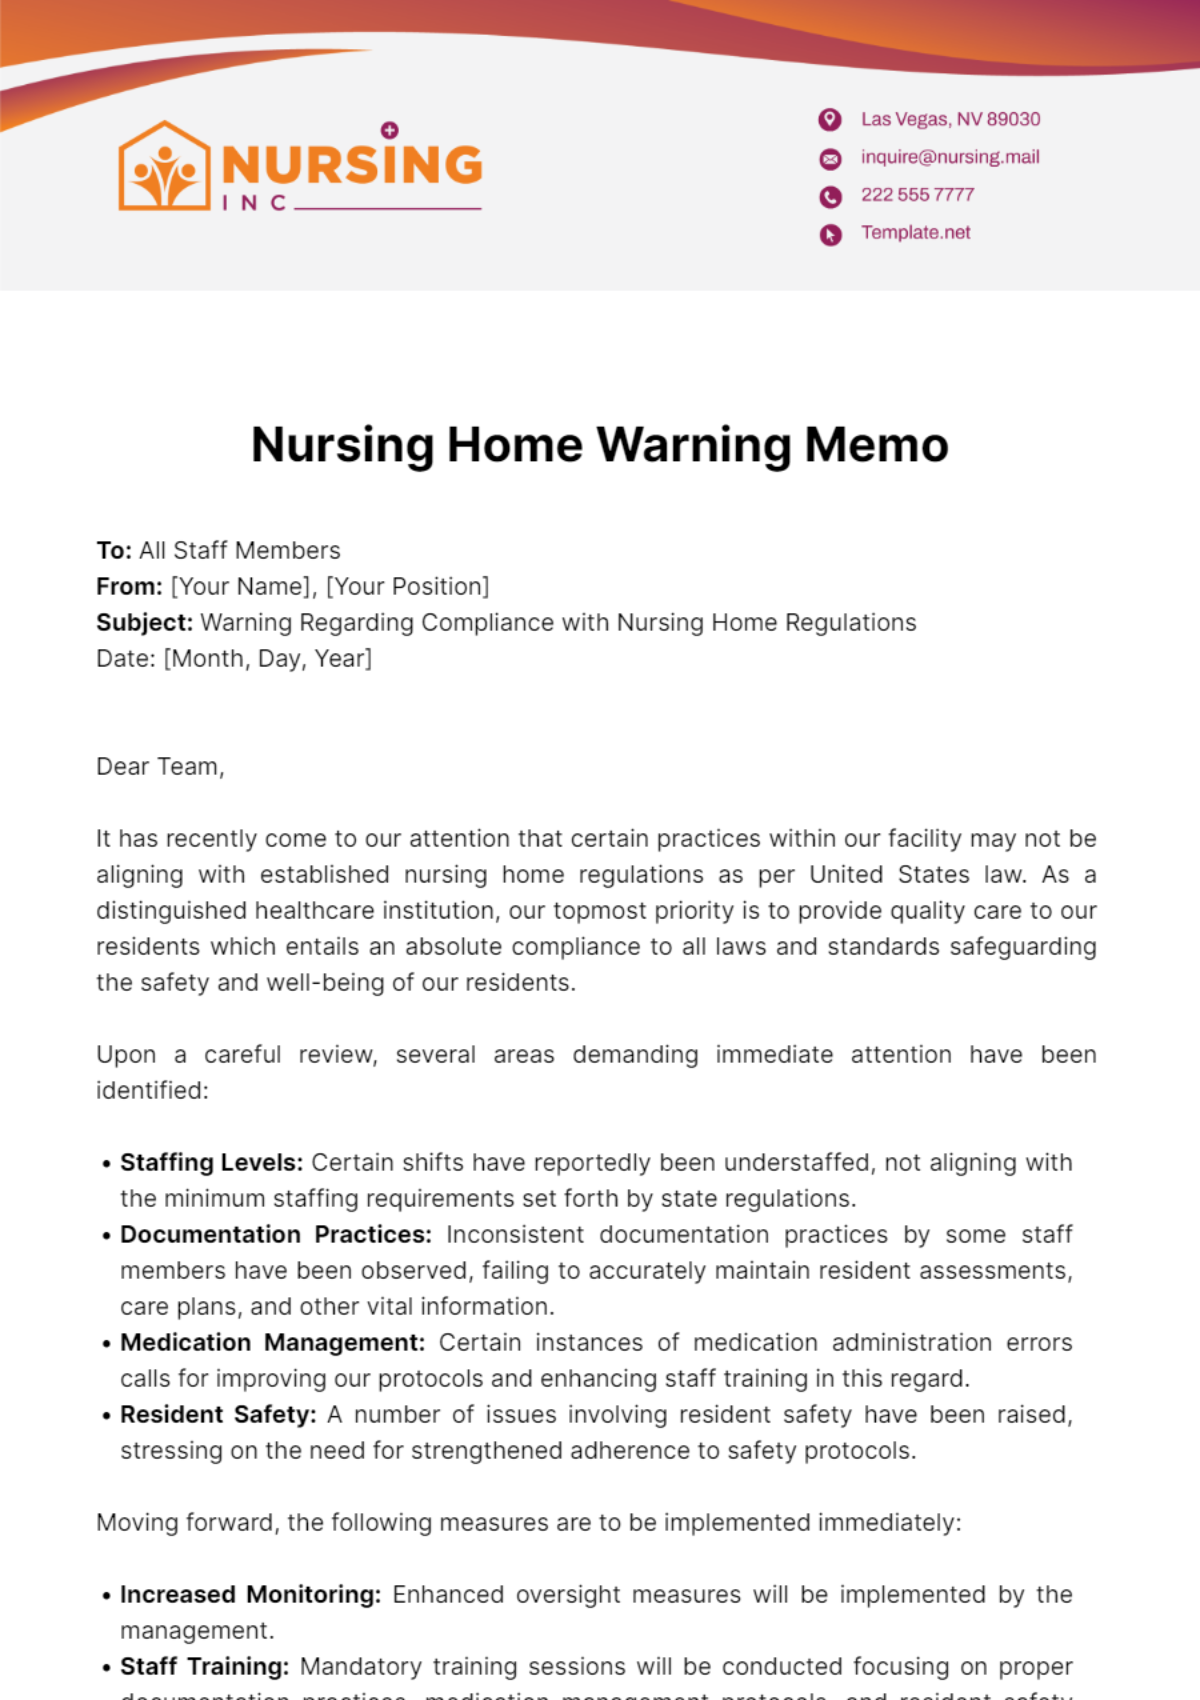 Nursing Home Warning Memo Template